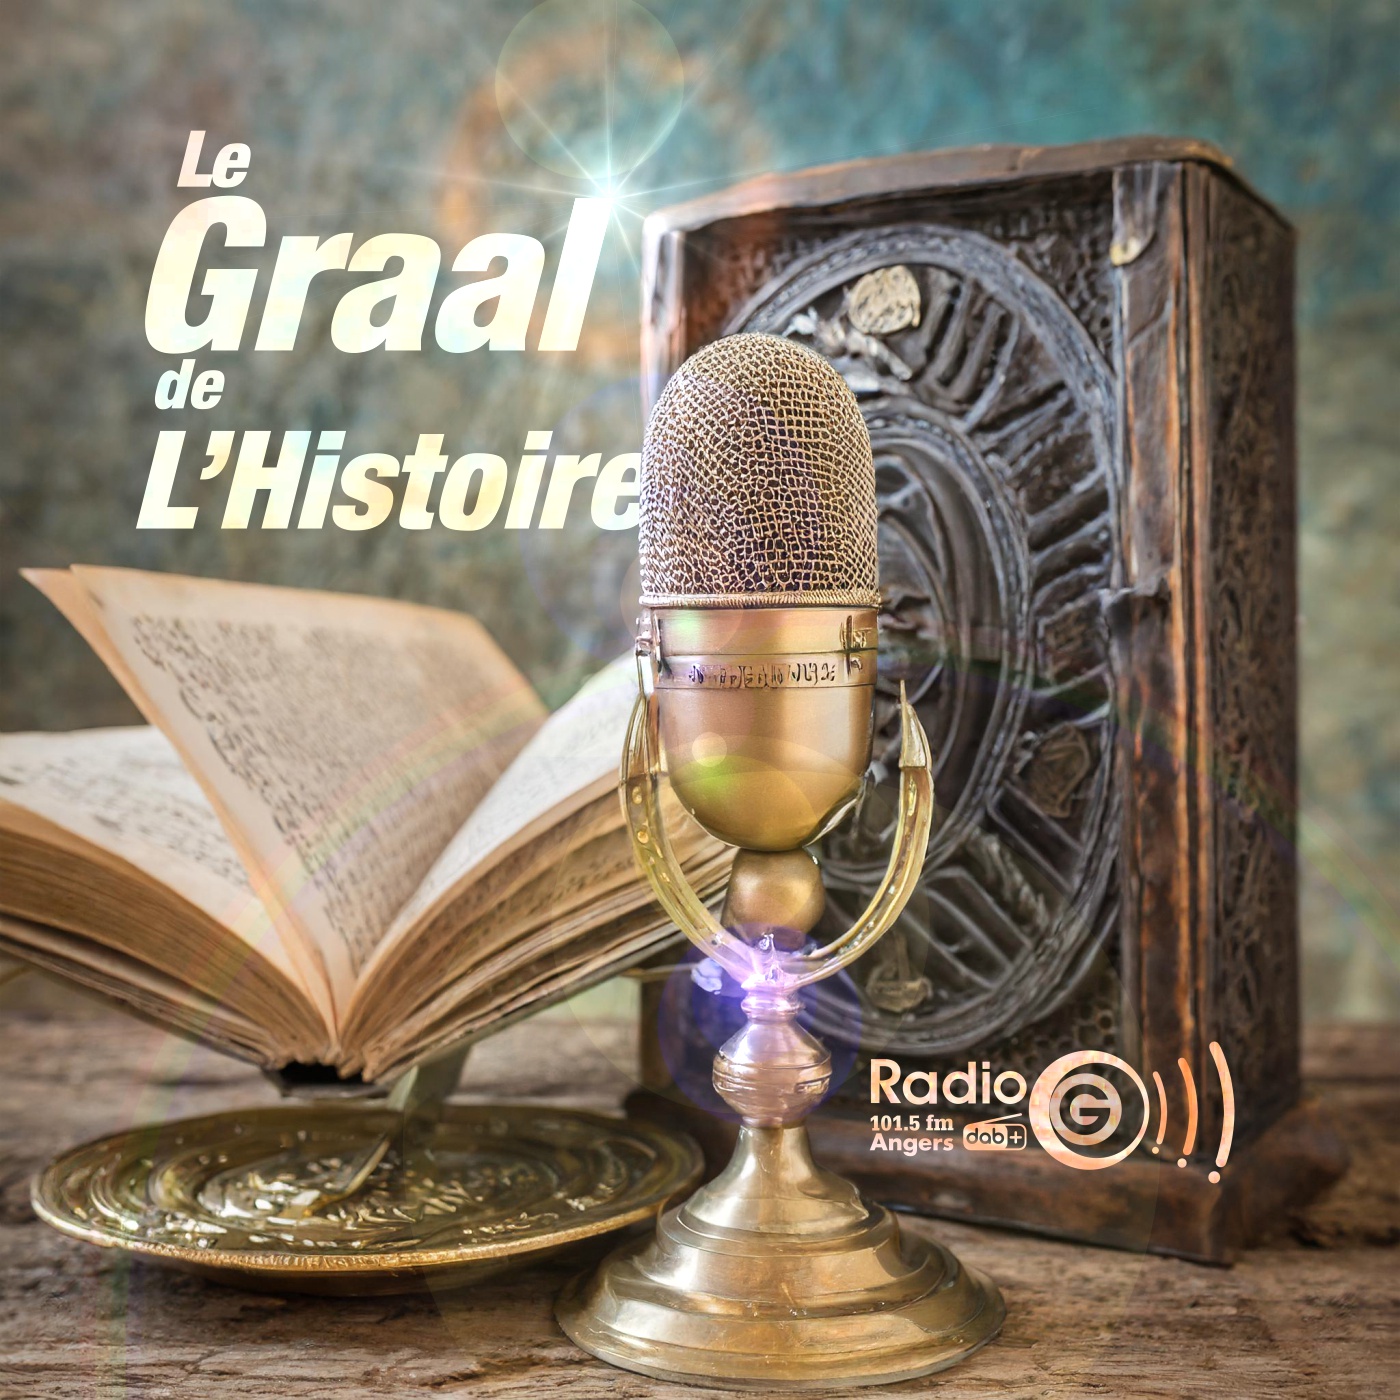 Graalv3 13 votes Le Graal de l'Histoire, un podcast avec des voix et des musiques en intelligence artificielles Graalv3 13 votes